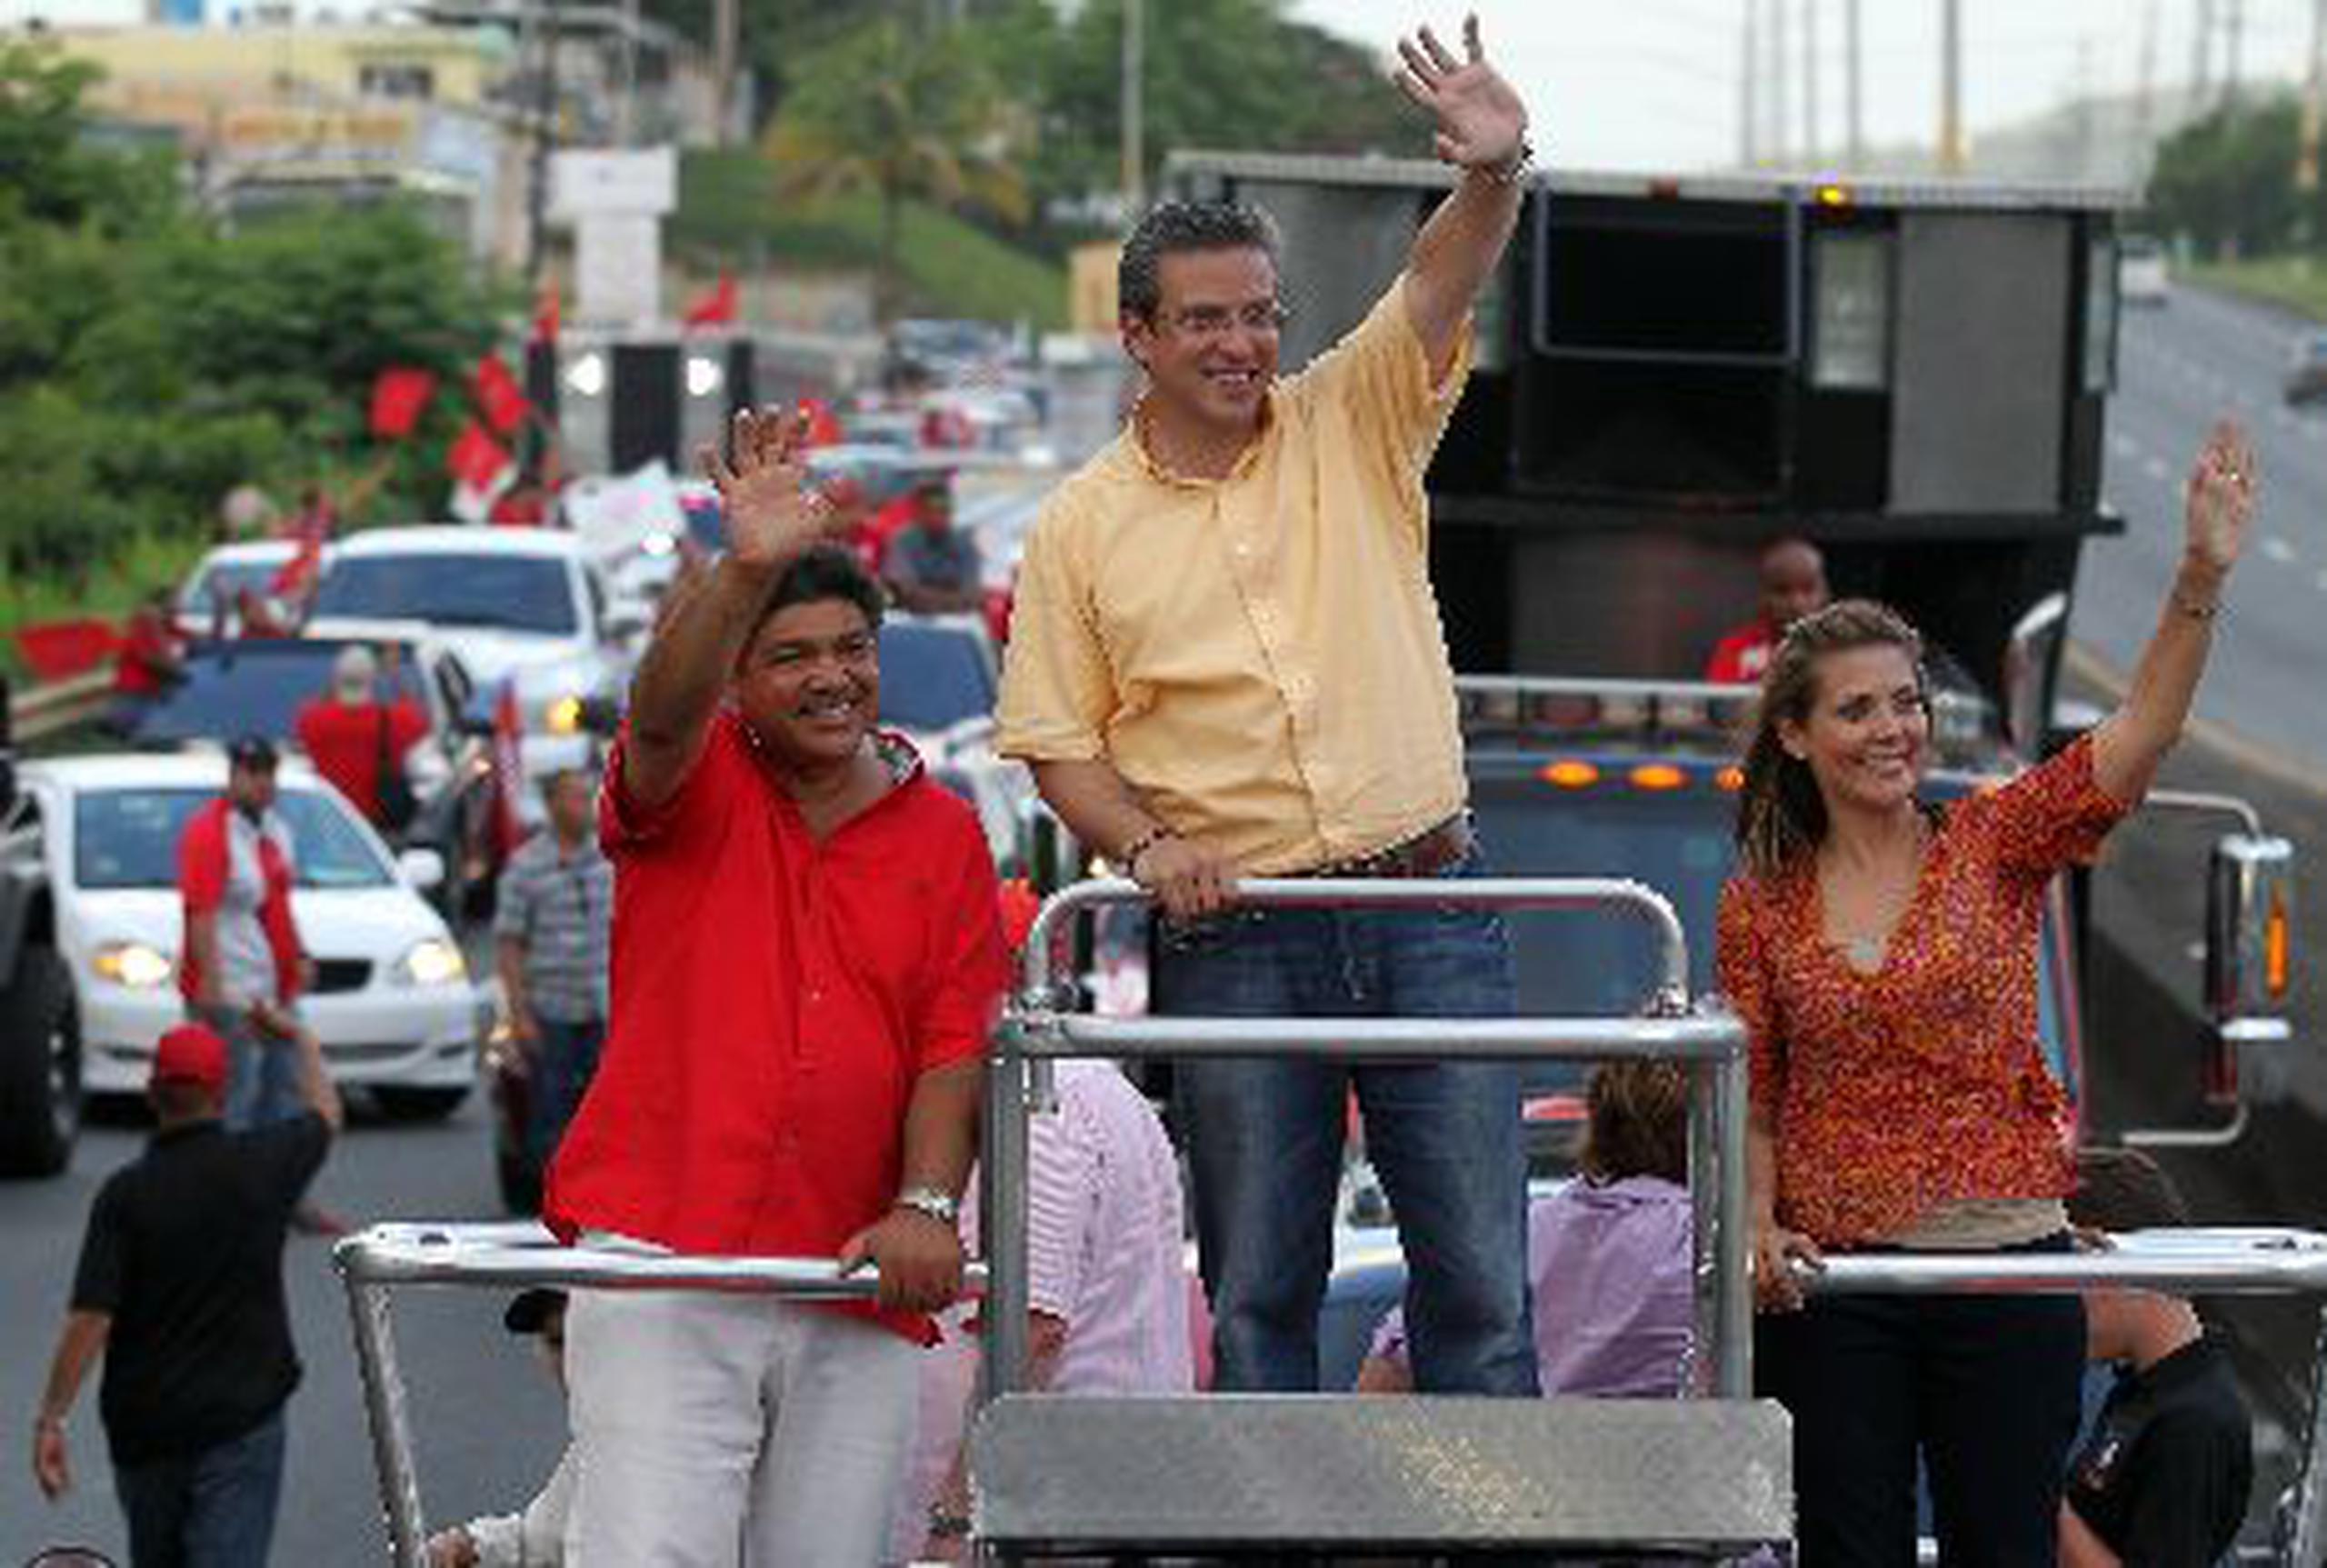 En la campaña, hace tiempo que el PNP debió haber desmoronado la imagen de Alejandro García Padilla, según Carlos Díaz Olivo. <font color="yellow">(Archivo)</font>